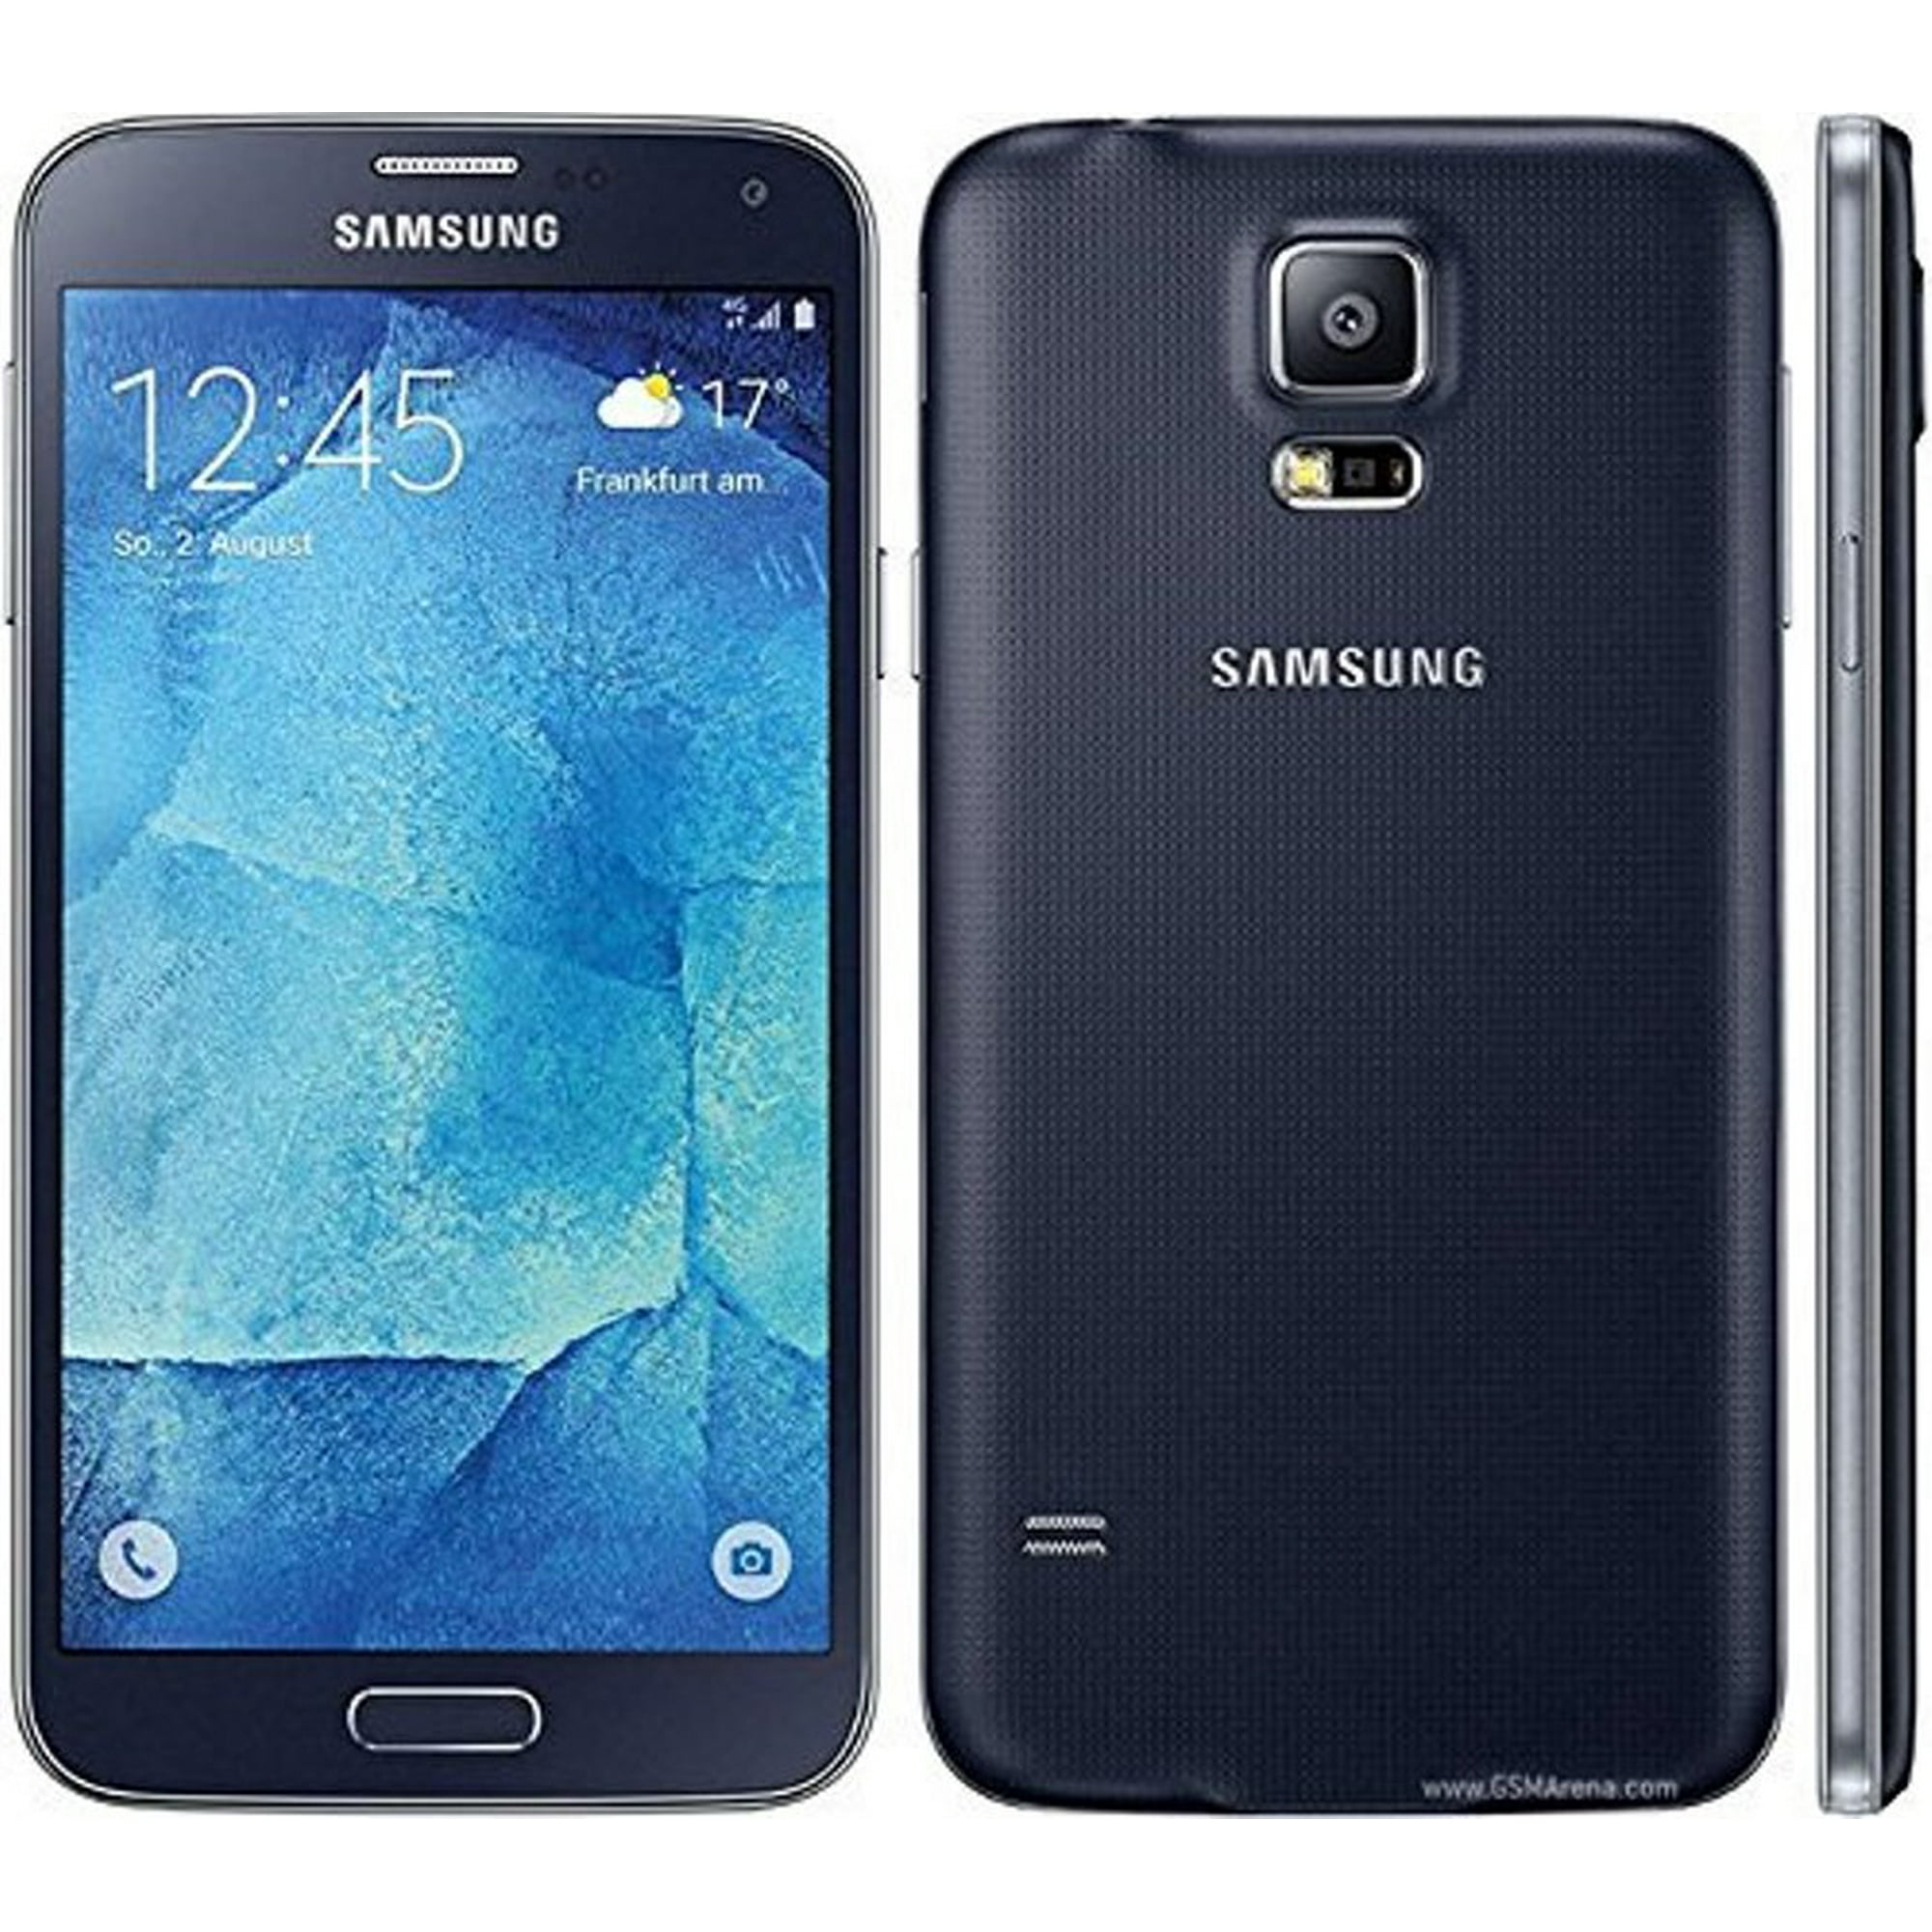 Samsung galaxy j5 купить. Samsung Galaxy s5 Neo. Samsung Galaxy j7 2015. Samsung Galaxy j7 (j700). Samsung Galaxy j 700.